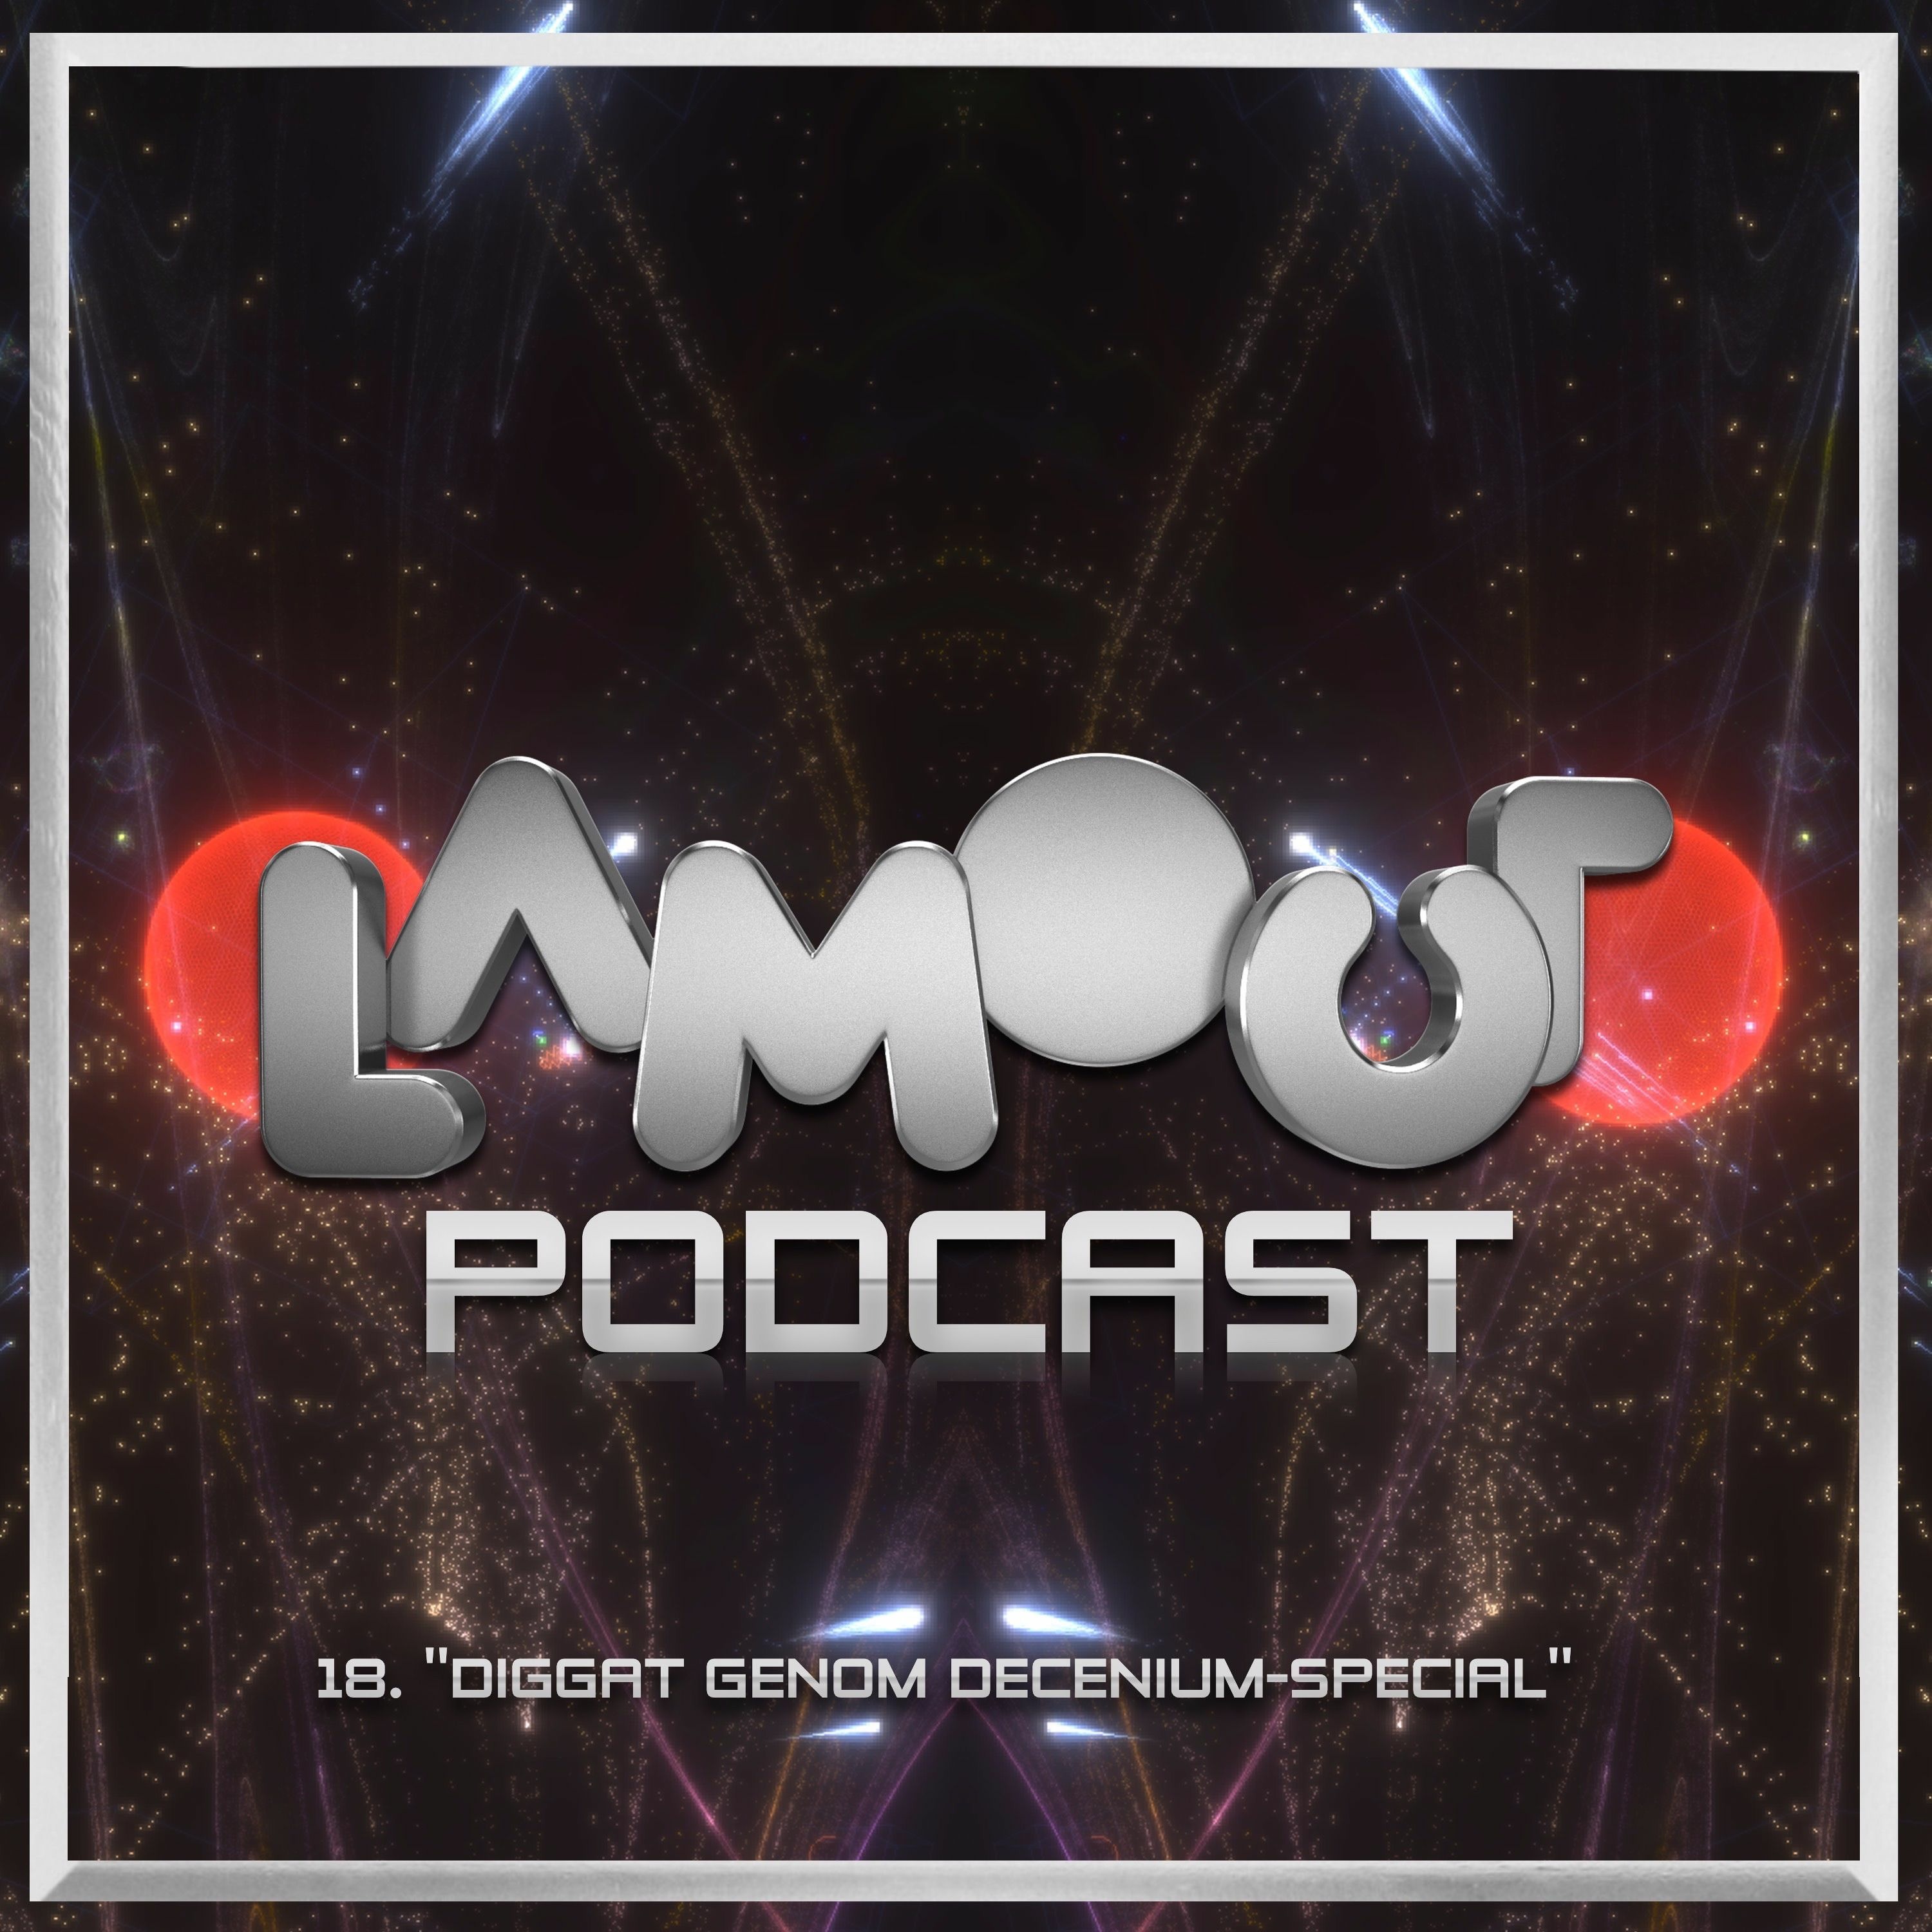 Lamour Podcast #18 - Diggat genom decenium-special